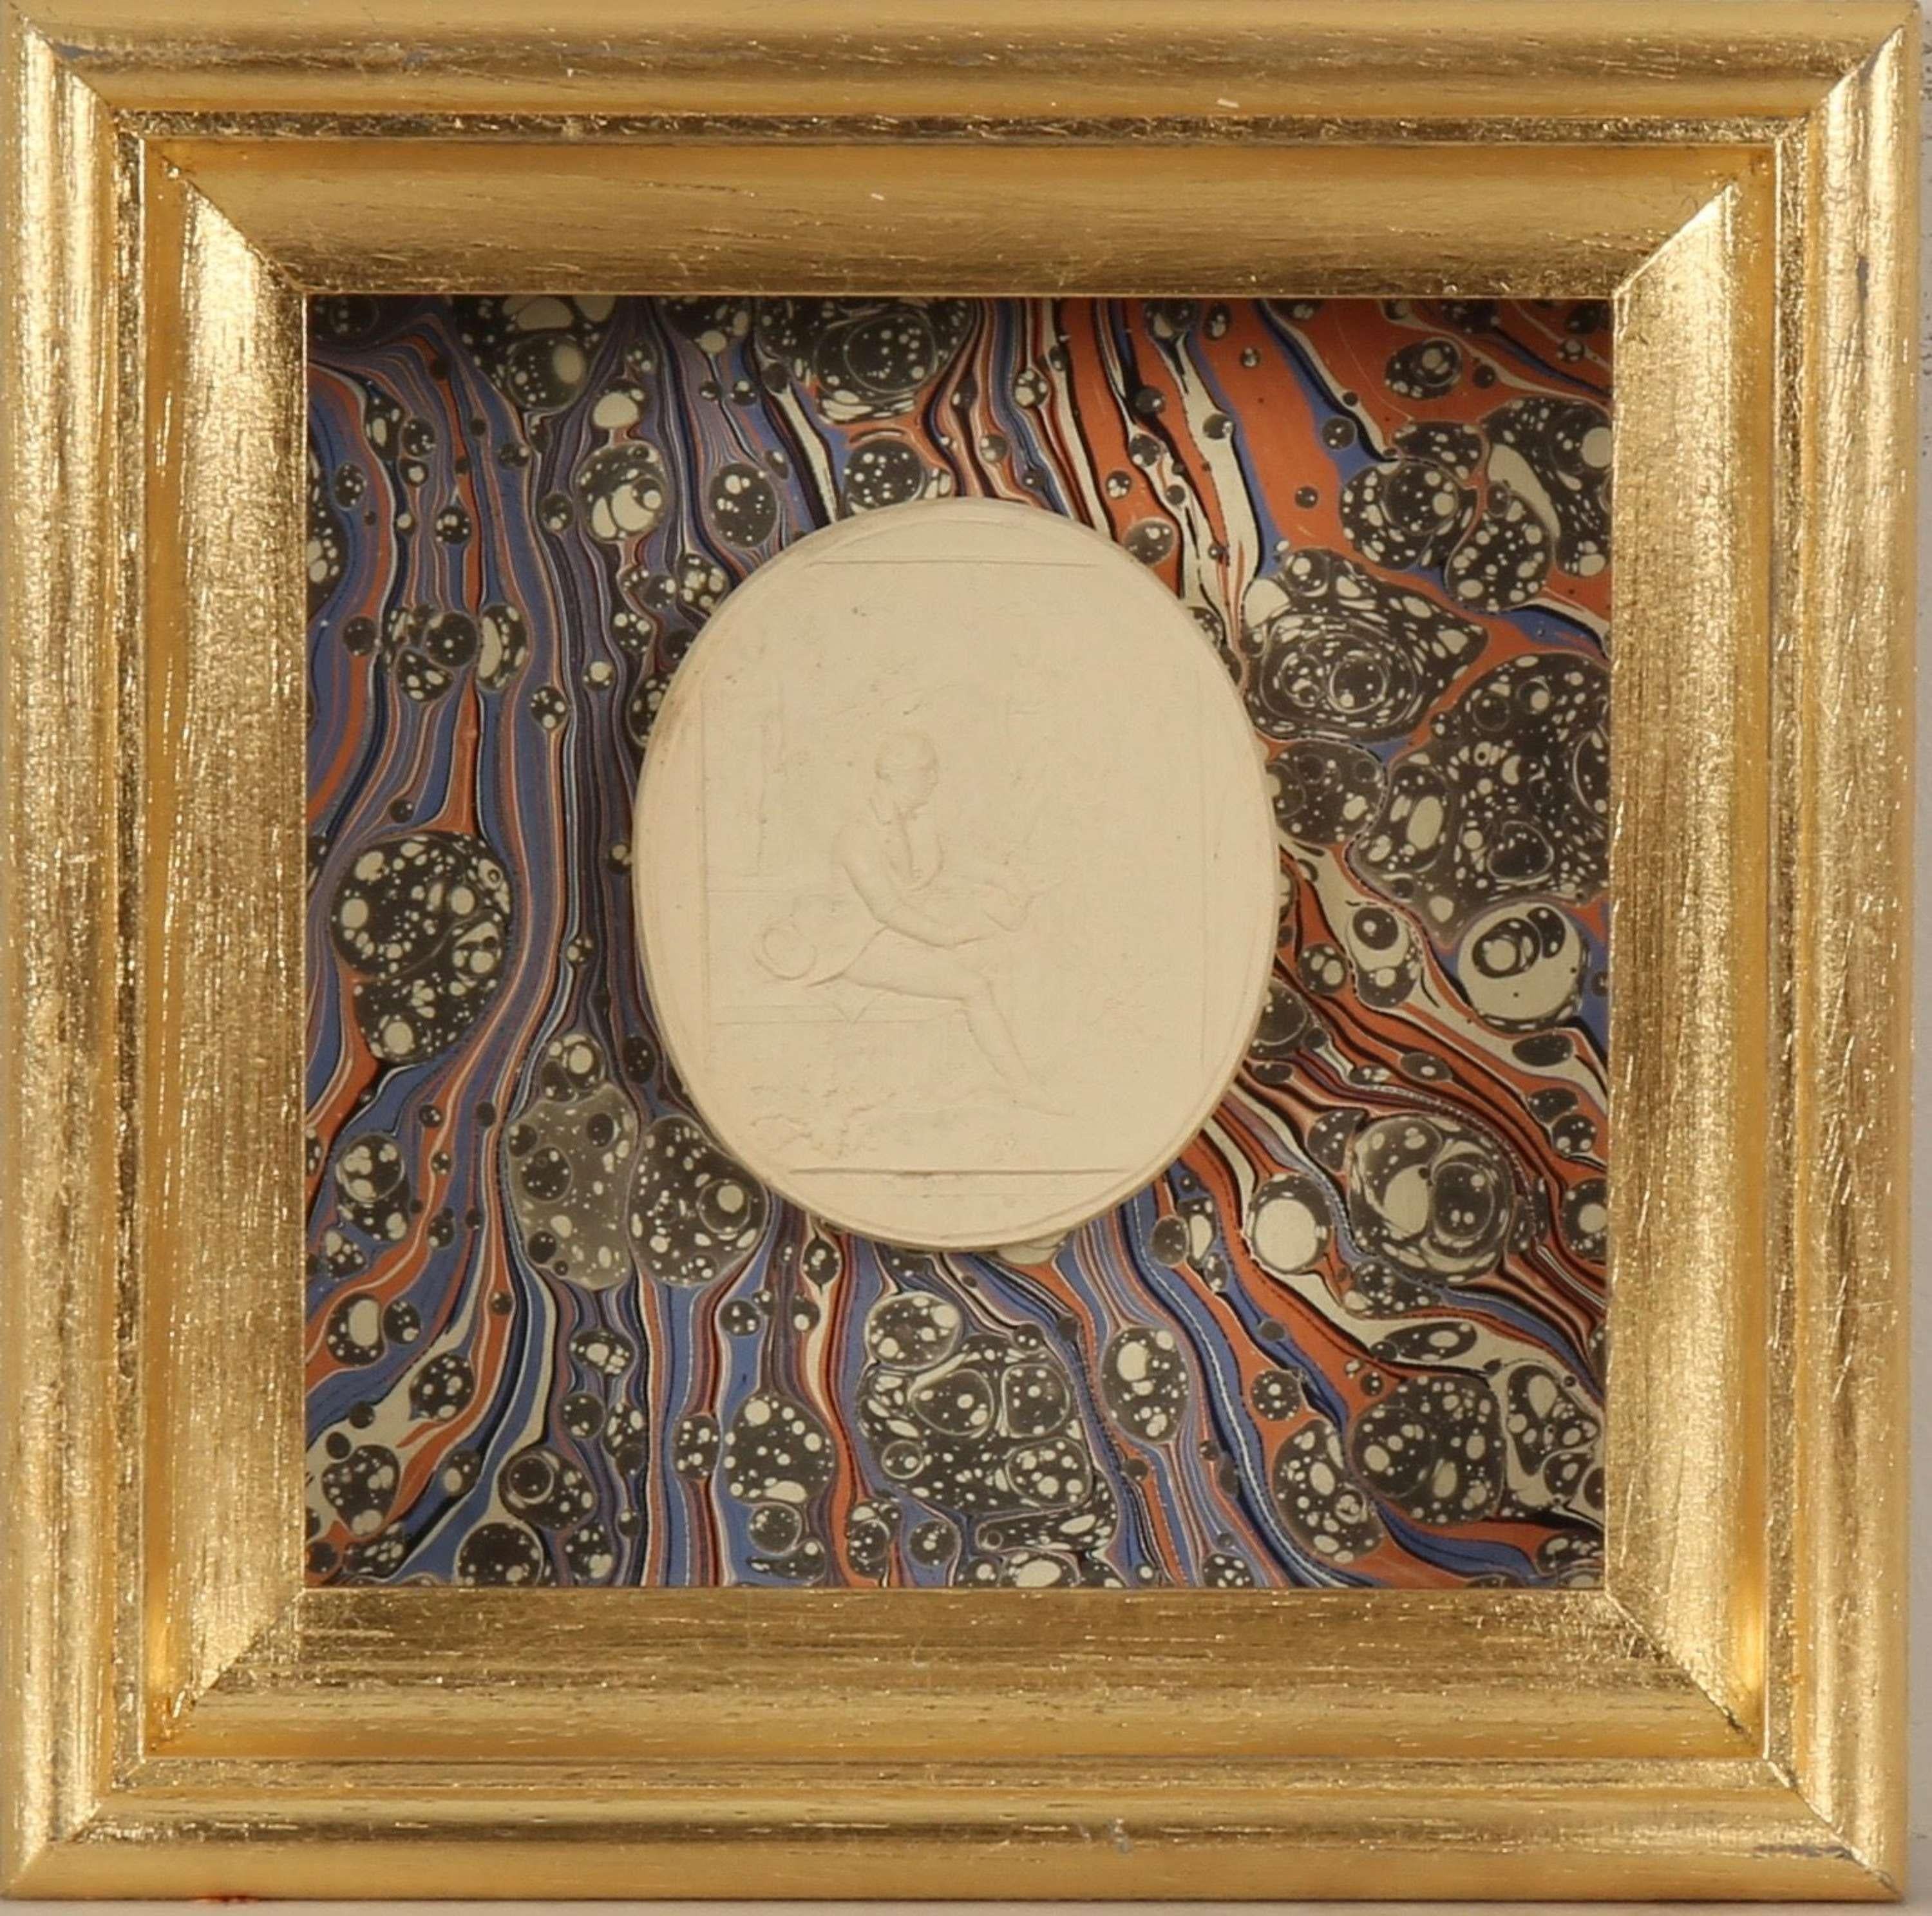 Paoletti Impronte, ‘Mussei Diversi’ Plaster Cameo Seal, Rome c1800 - Art by Bartolomeo Paoletti and Pietro Paoletti